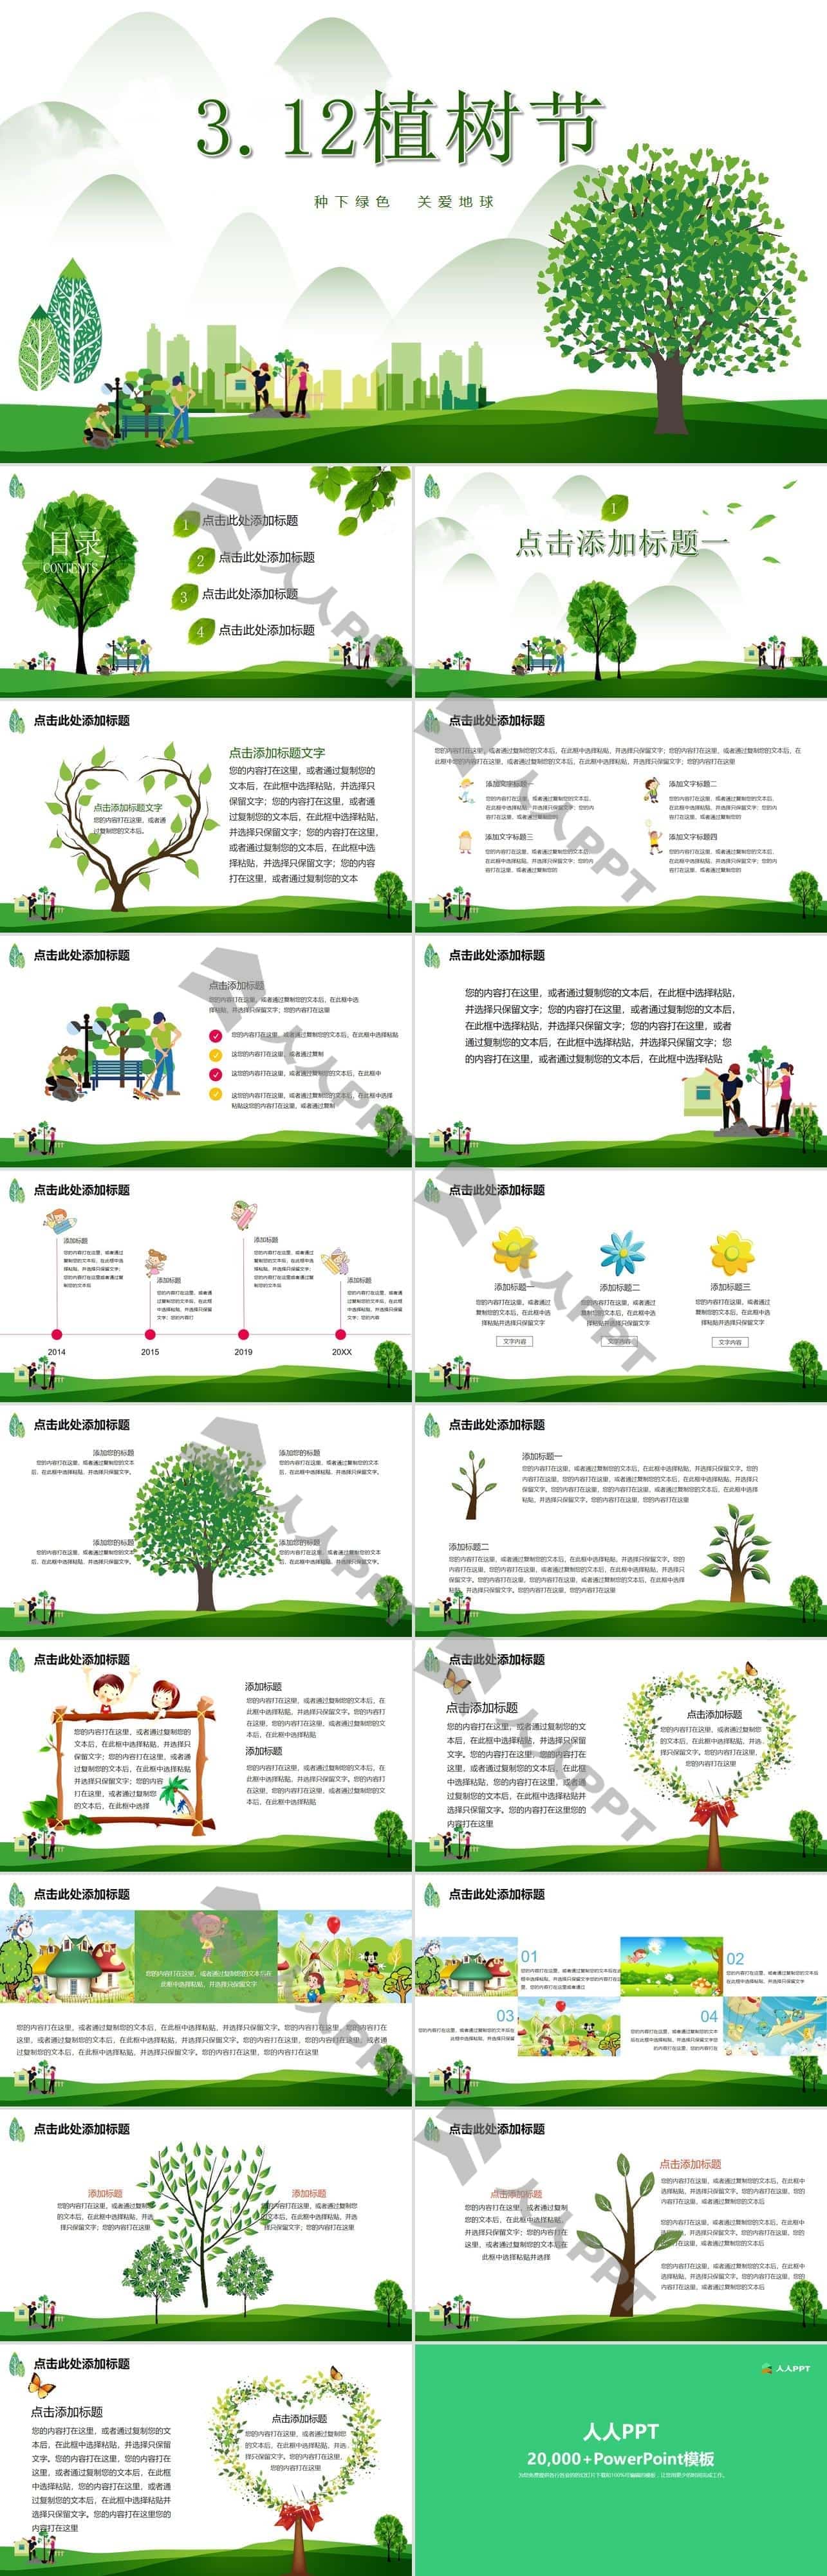 种下绿色 关爱地球――环保绿小清新3.12植树节PPT模板长图